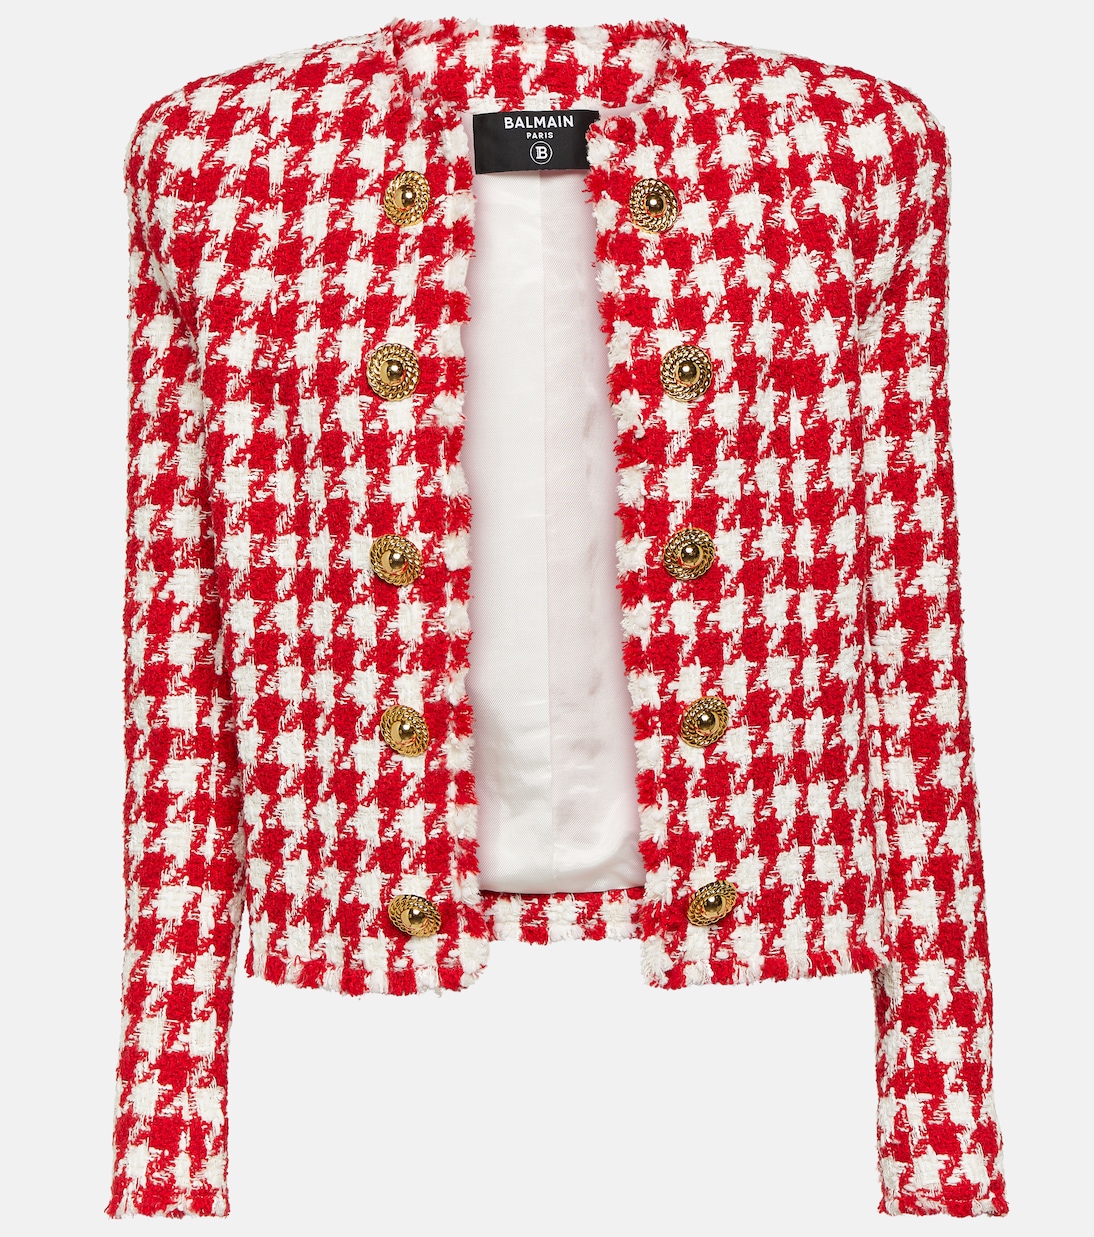 Твидовый пиджак с узором «гусиные лапки» Balmain, мультиколор женский твидовый блейзер в стиле гусиные лапки